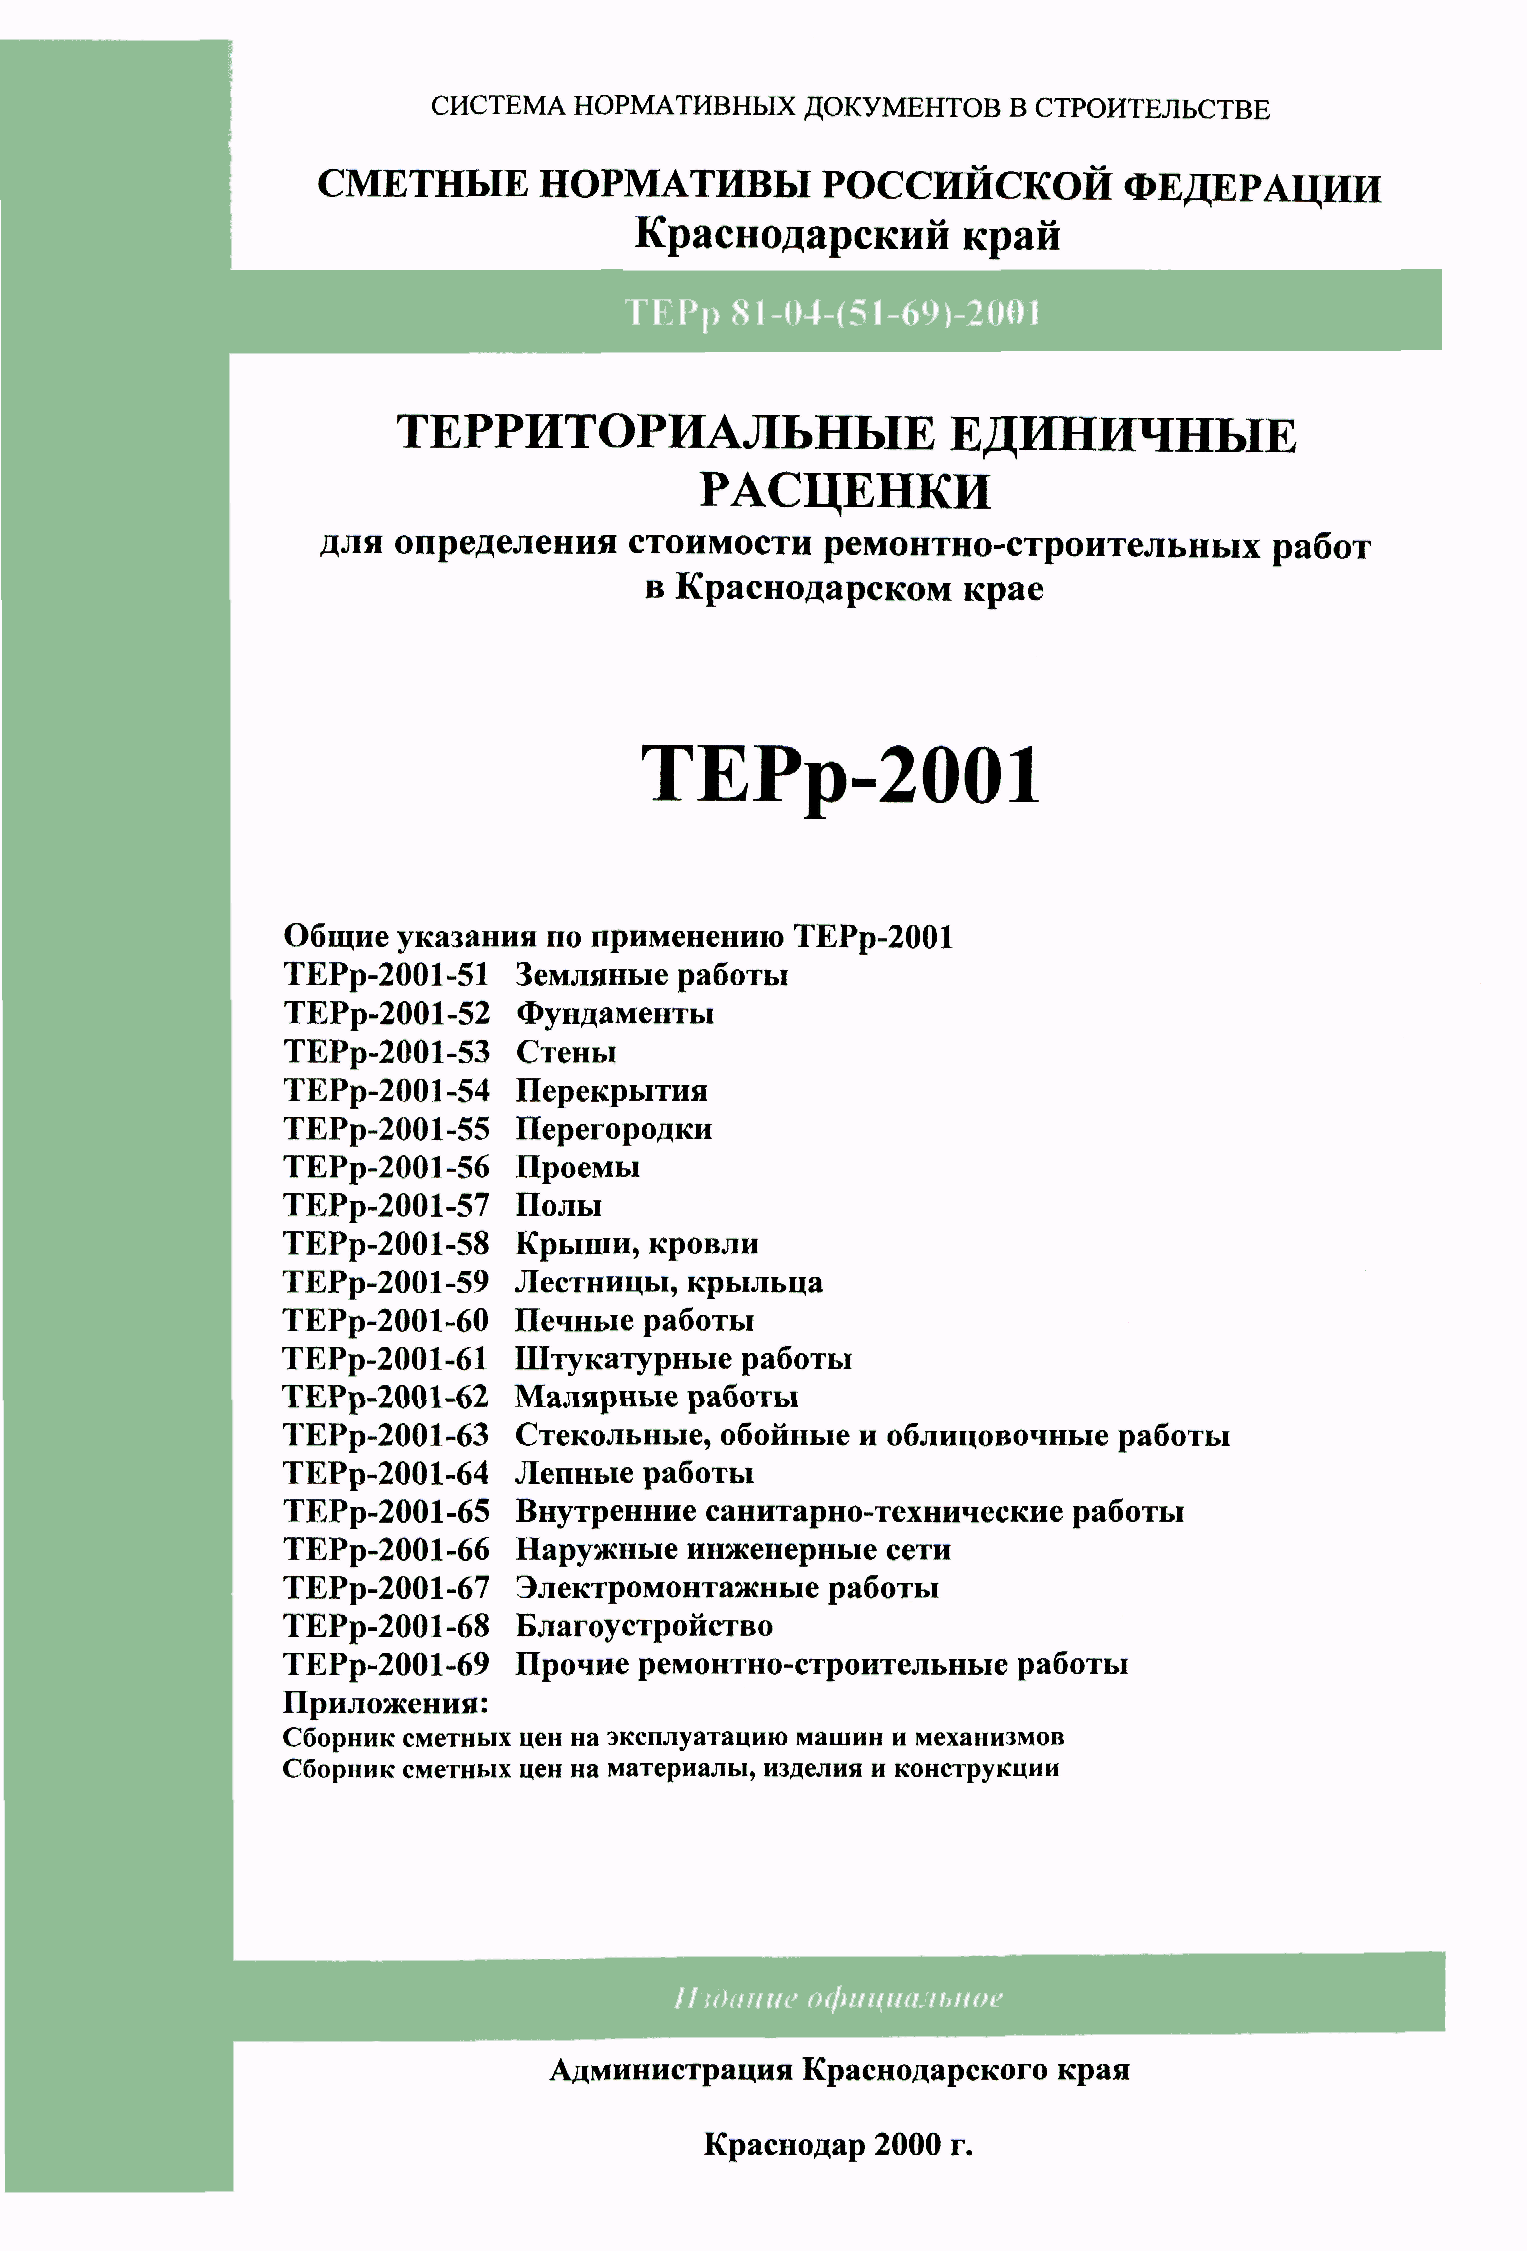 ТЕРр Краснодарского края 2001-63